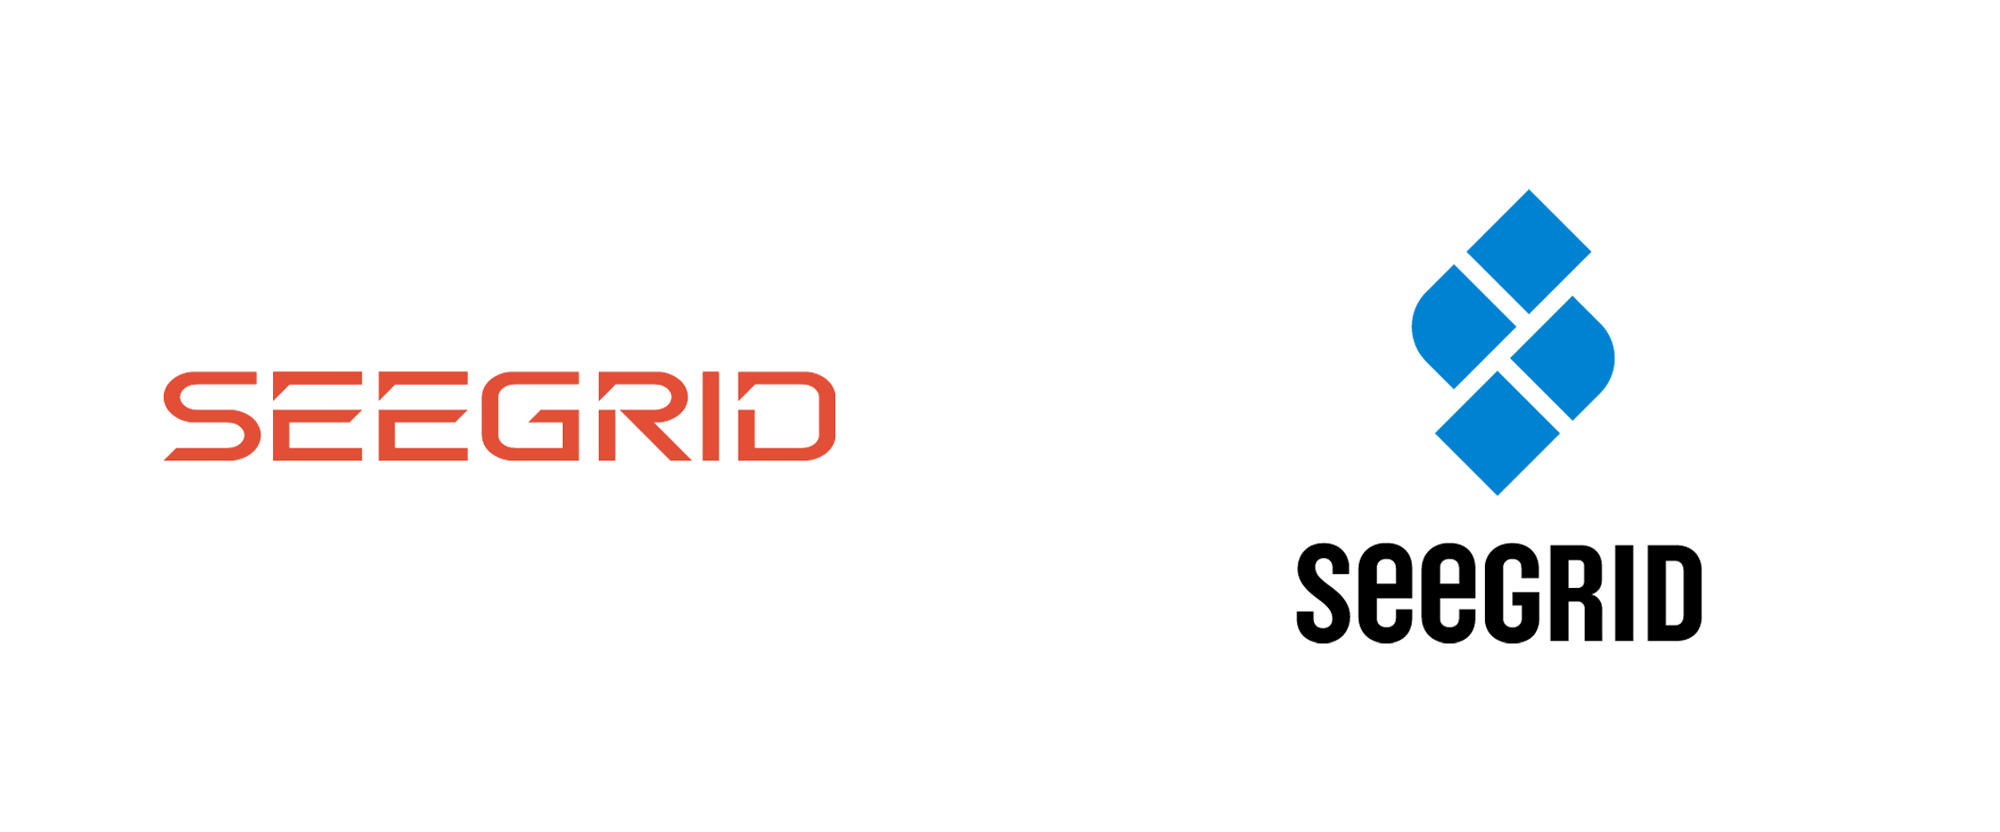 New Logo for Seegrid by Mackey Saturday